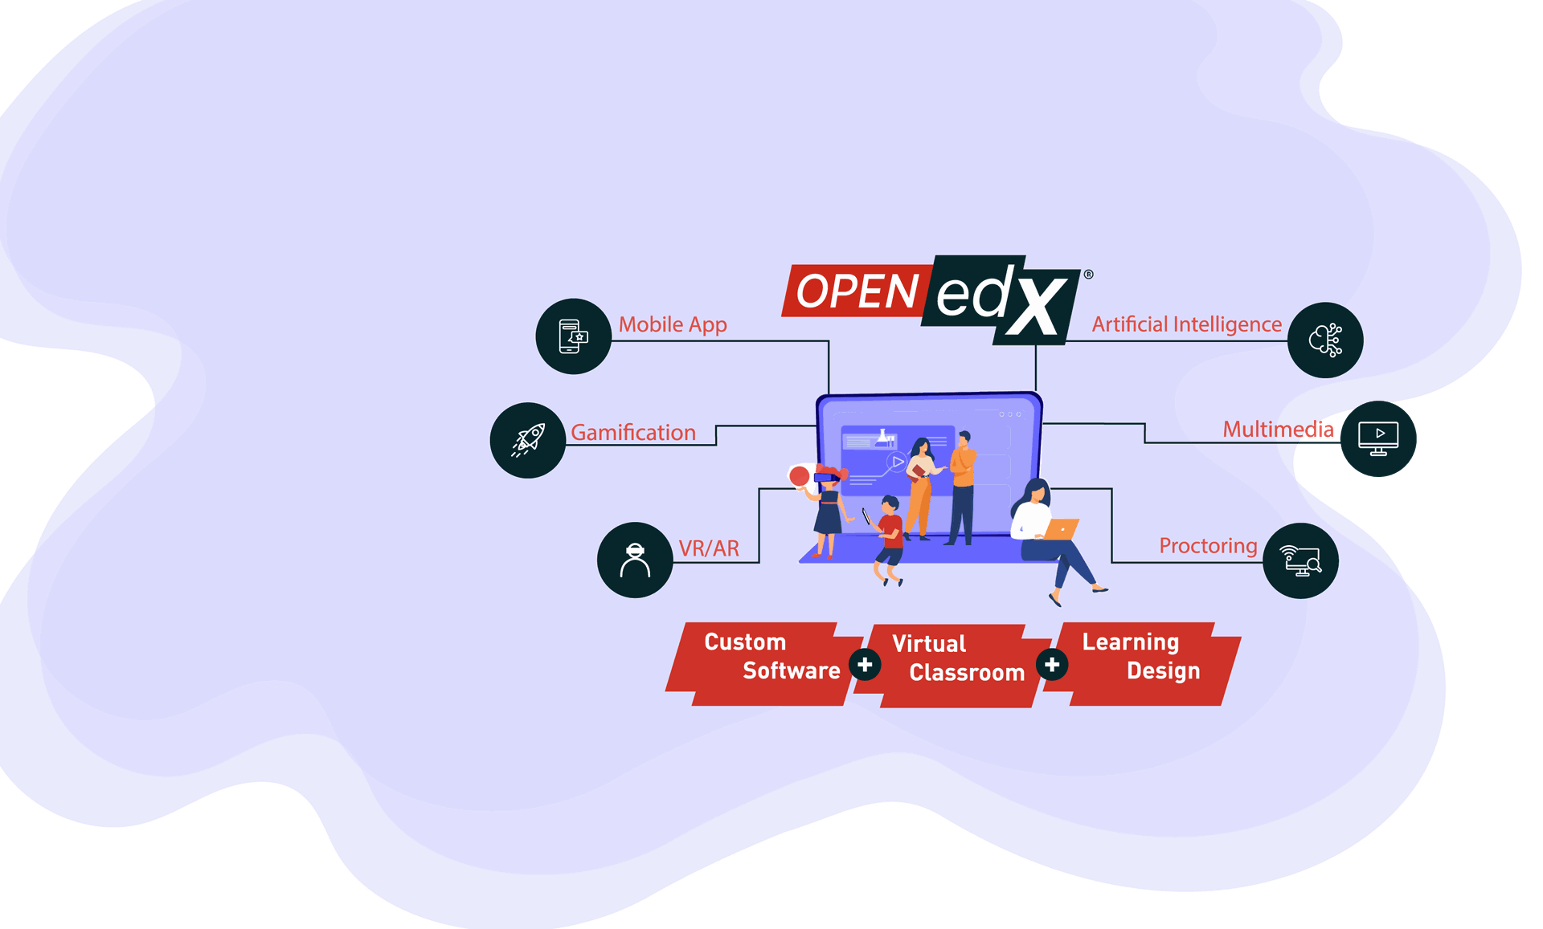 OpenEdx image